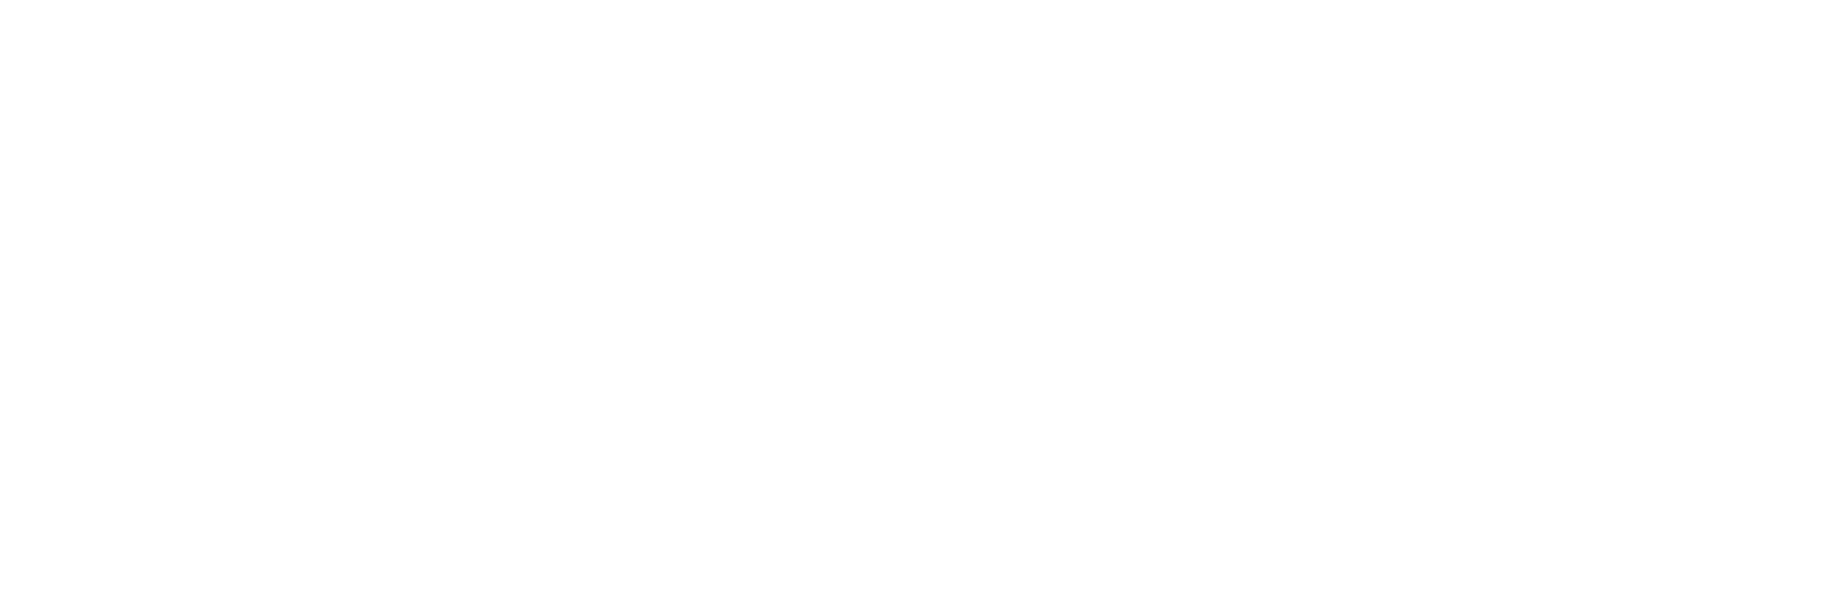 Centre_Hospitaliter_de_Périgueux_logo BLANC